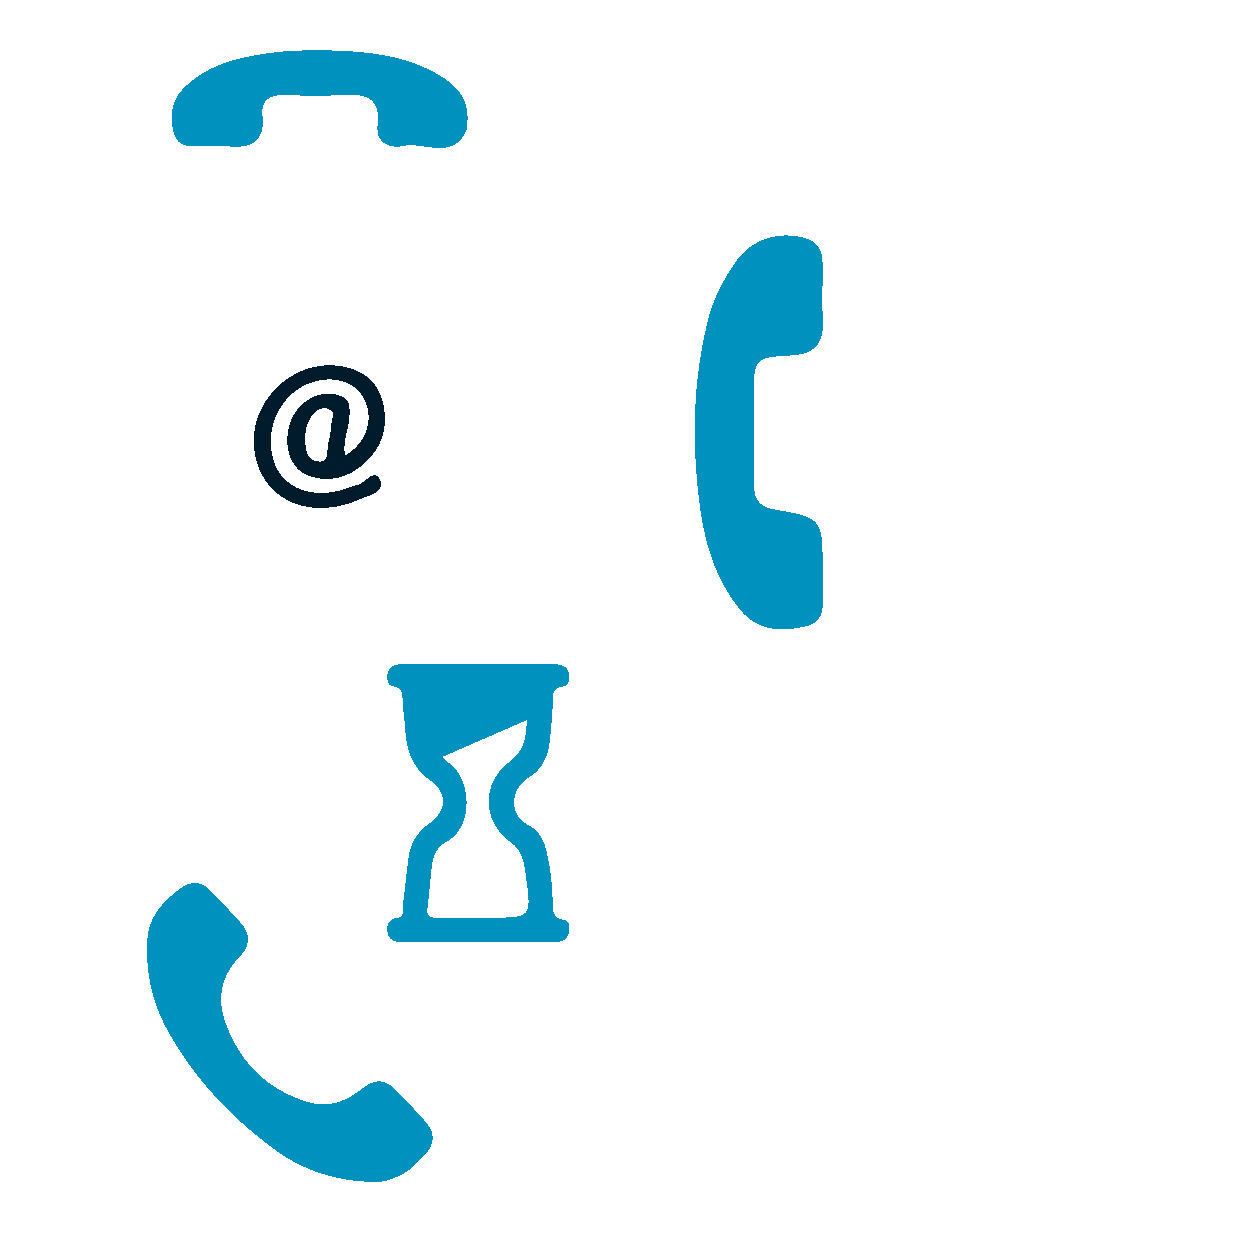 Telefonanschluss mit Fax-Empfang via E-Mail